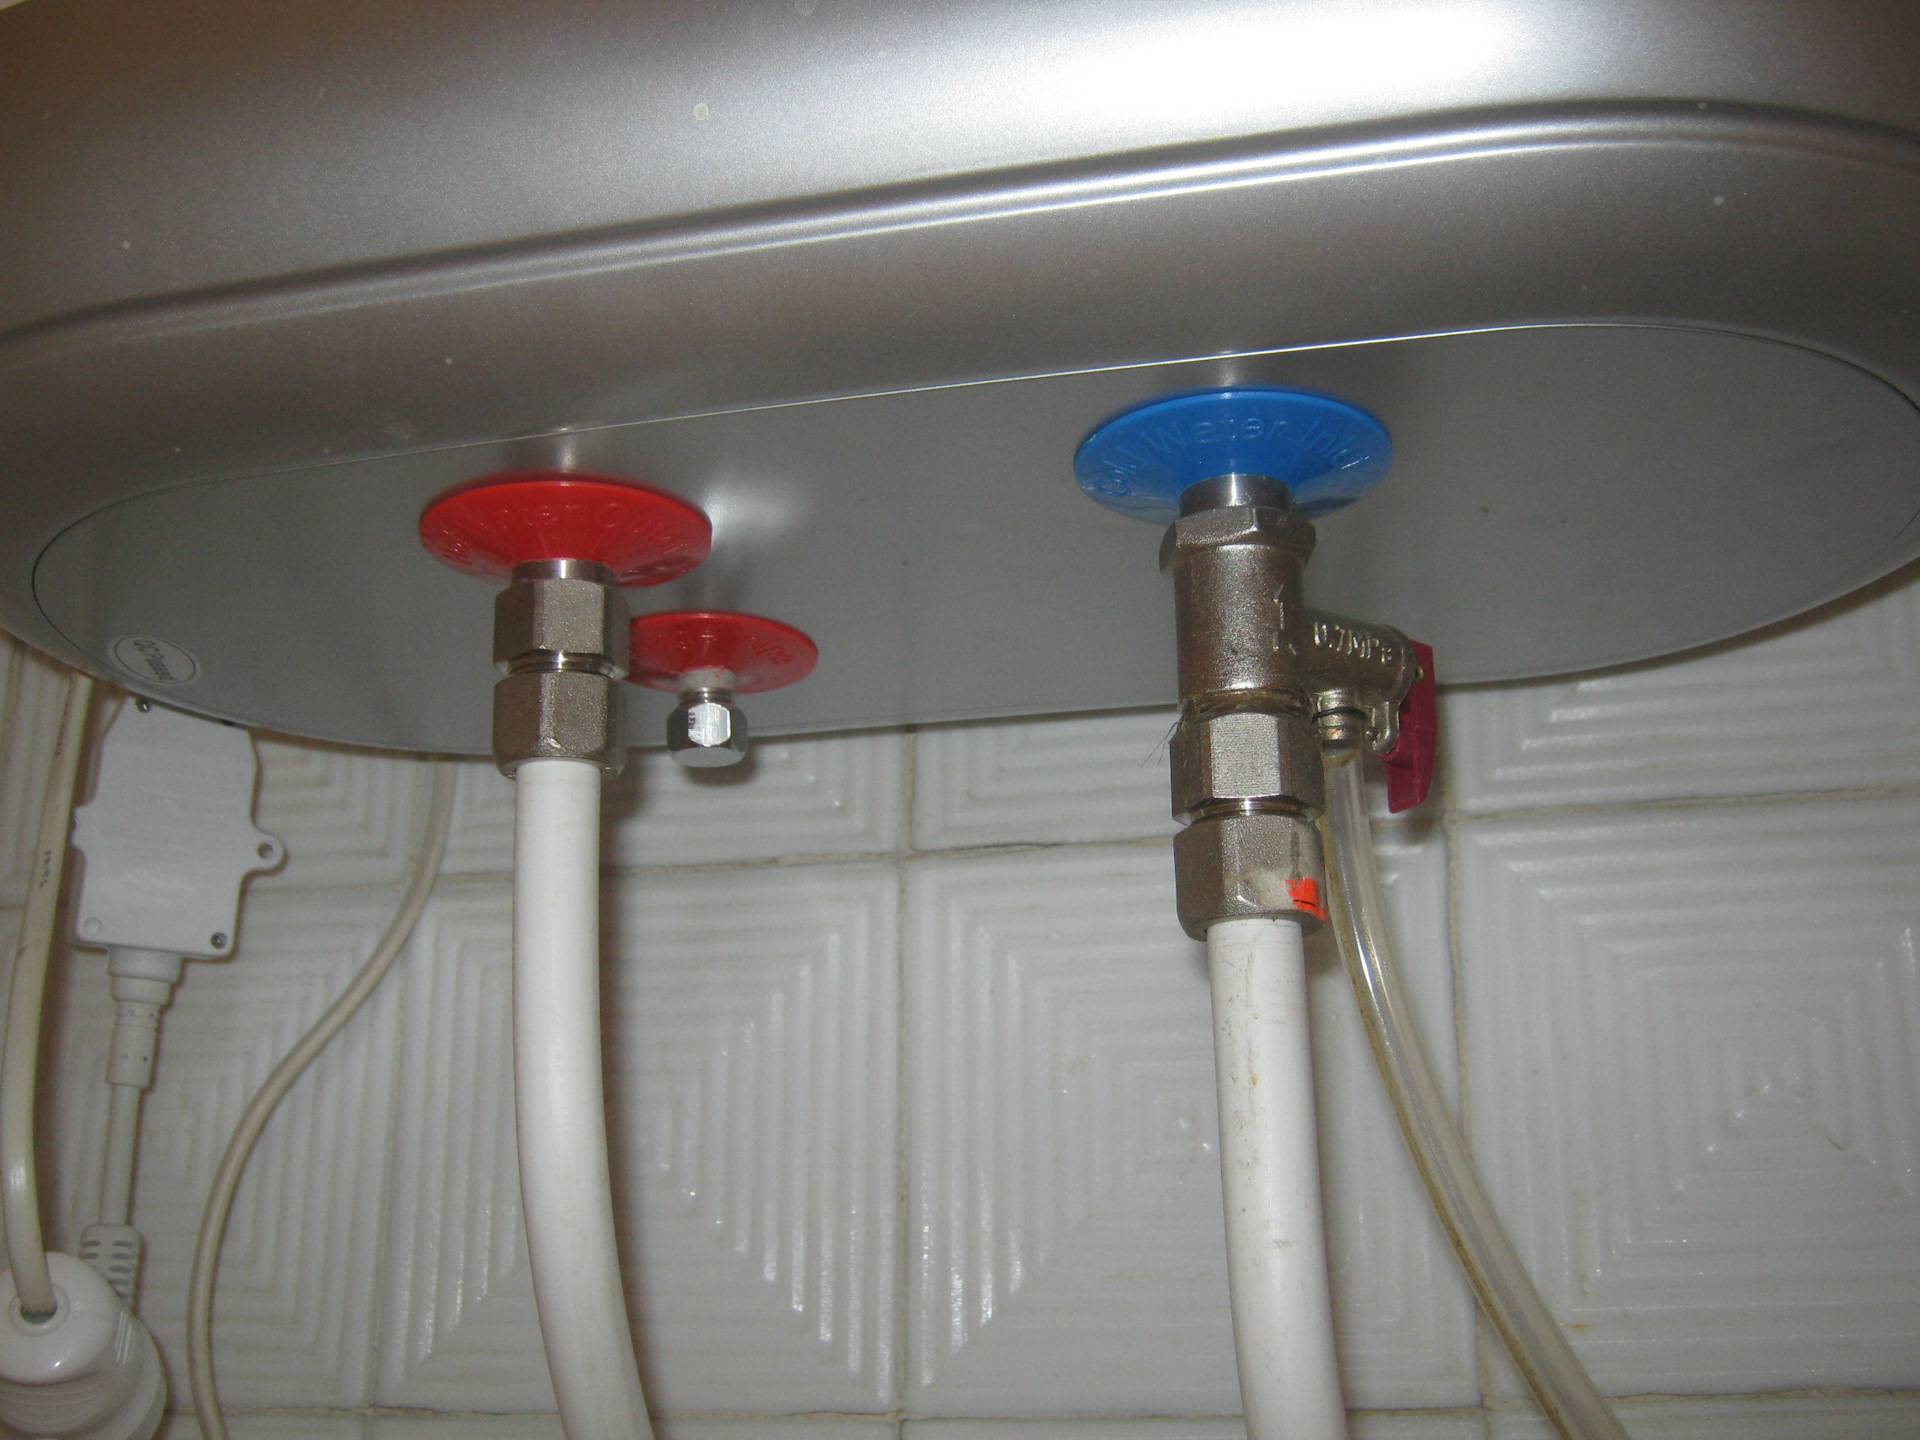 Как слить воду с водонагревателя: плюсы и минусы разных способов + пример проведения работ